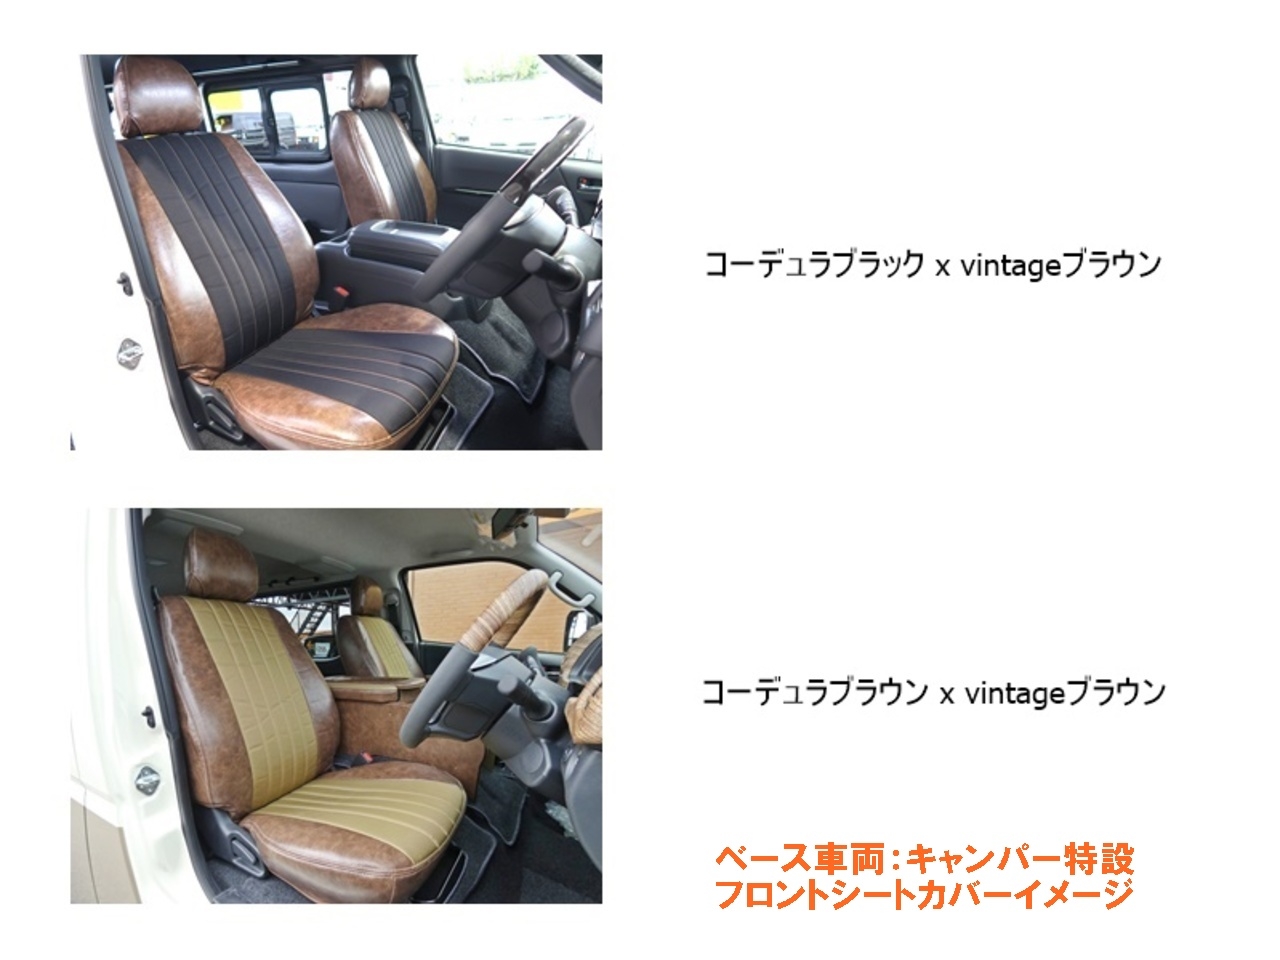 ハイエース スーパーロング バンライフコンセプト キャンピングカー【FD-BOXV10-H】 